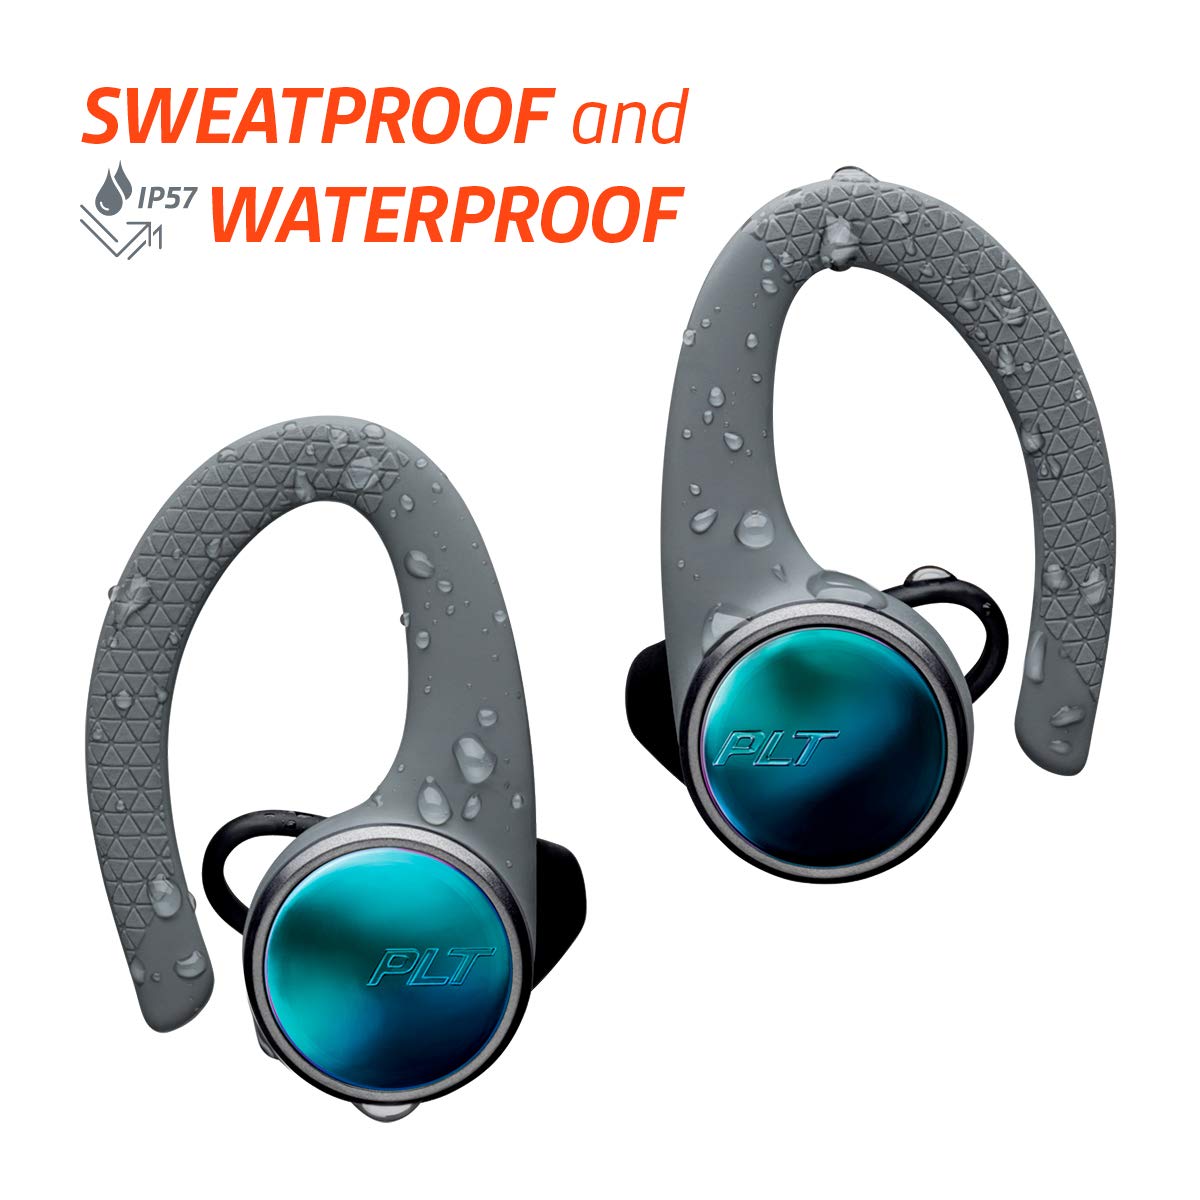 Plantronics 211855-99 BackBeat Fit 3100 True Wireless Earbuds, Sweatproof and Waterproof In Ear Workout Headphones, Black, One Size Fits All